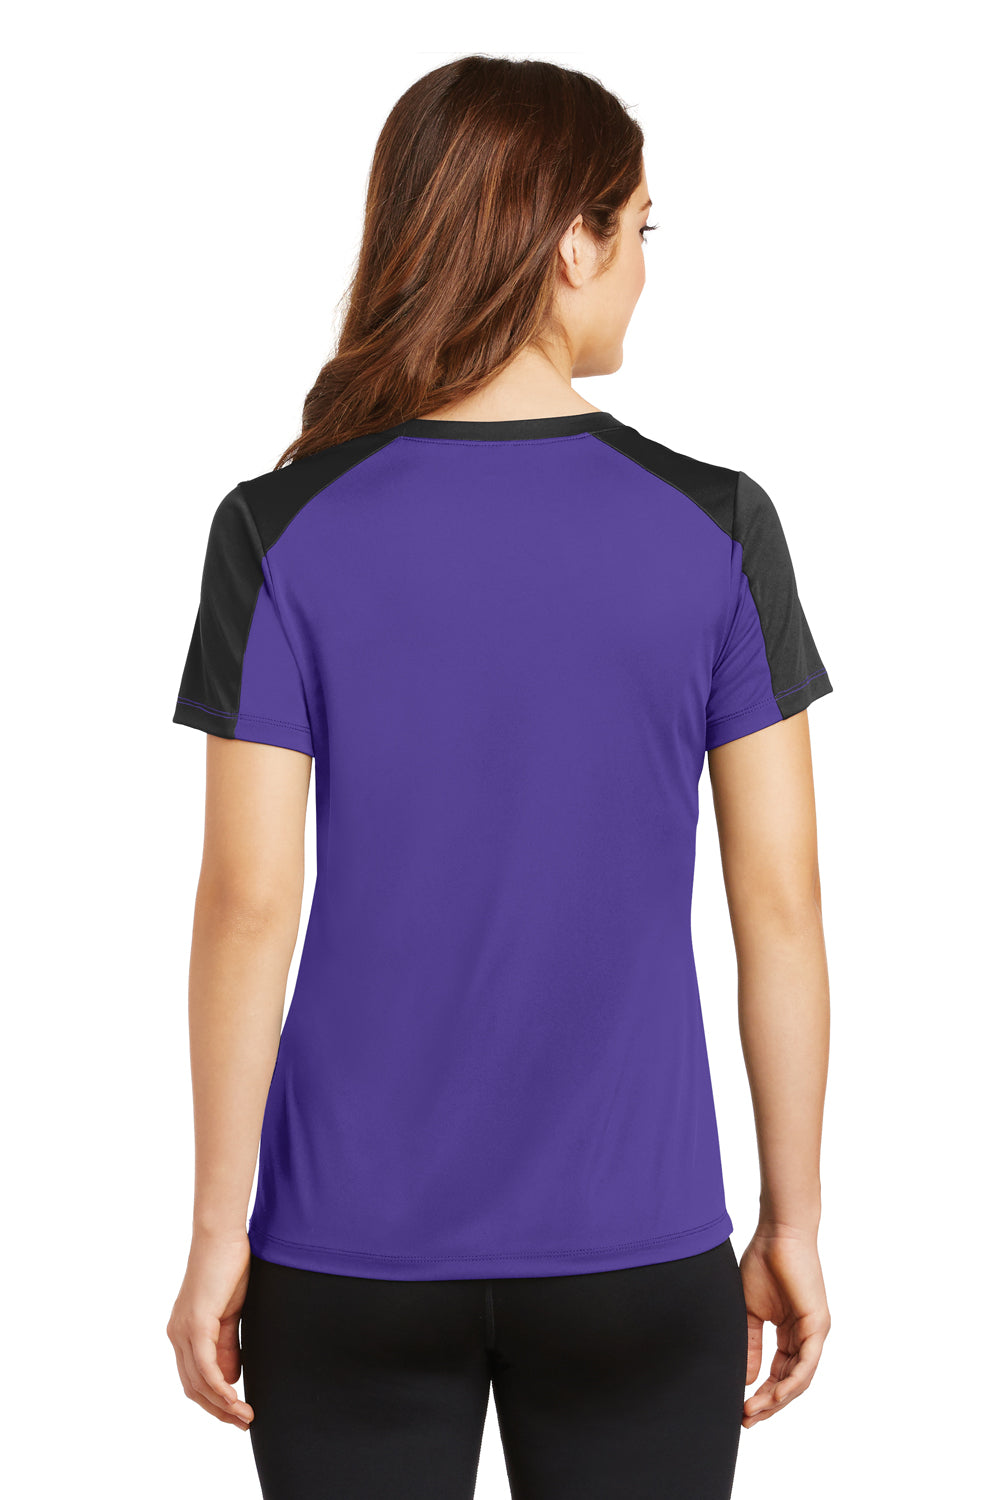 Sport-Tek LST354 Womens Competitor Moisture Wicking Short Sleeve V-Neck T-Shirt Purple/Black Back